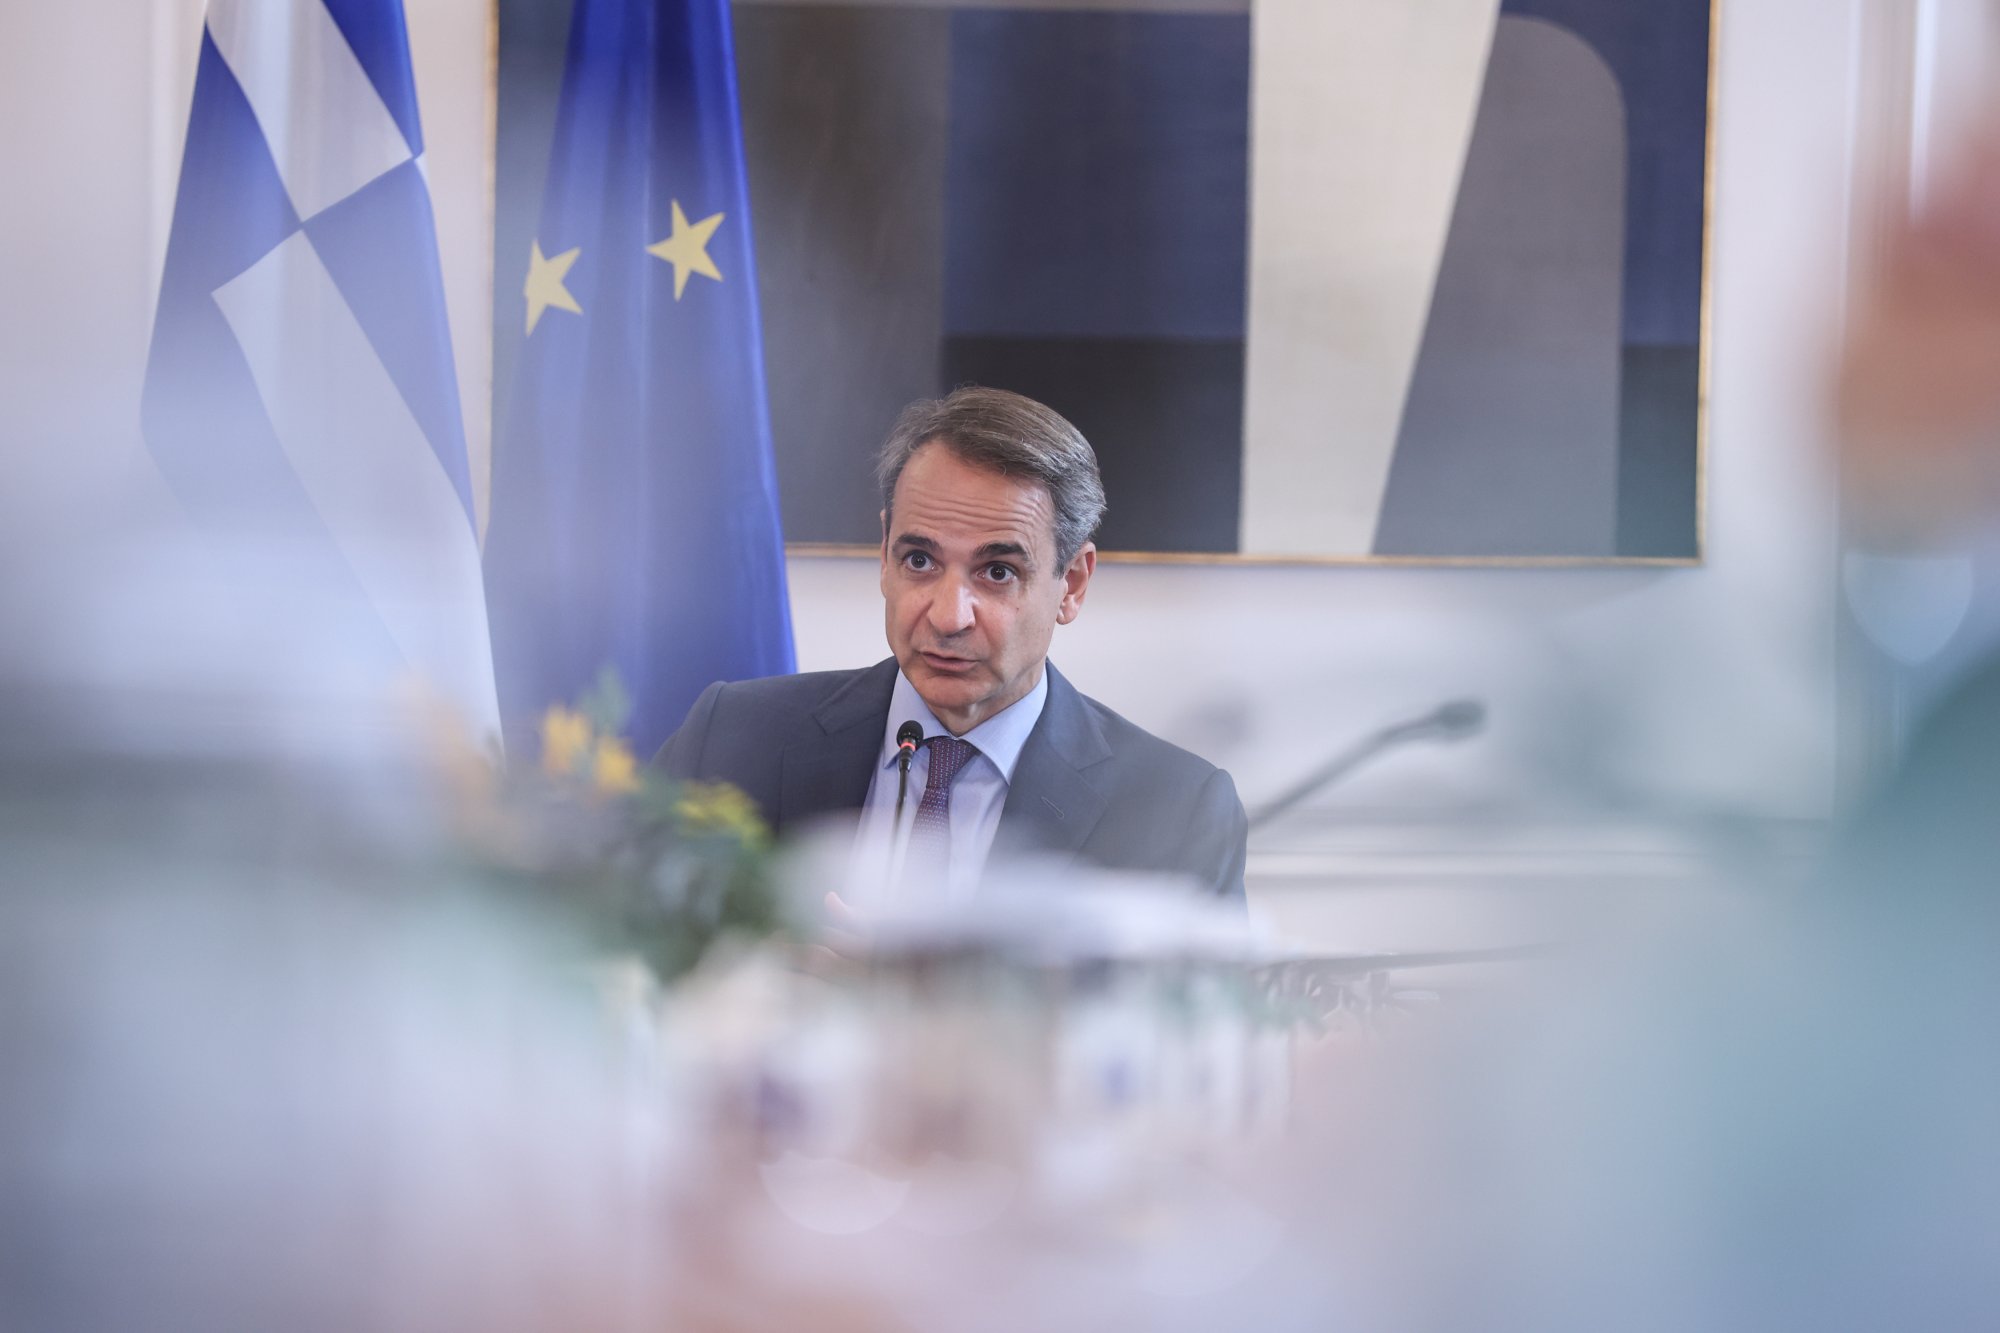 Μητσοτάκης: Η Ελλάδα μπροστά σε ιστορικό παράθυρο ευκαιρίας, πατριωτικό καθήκον να το αξιοποιήσουμε